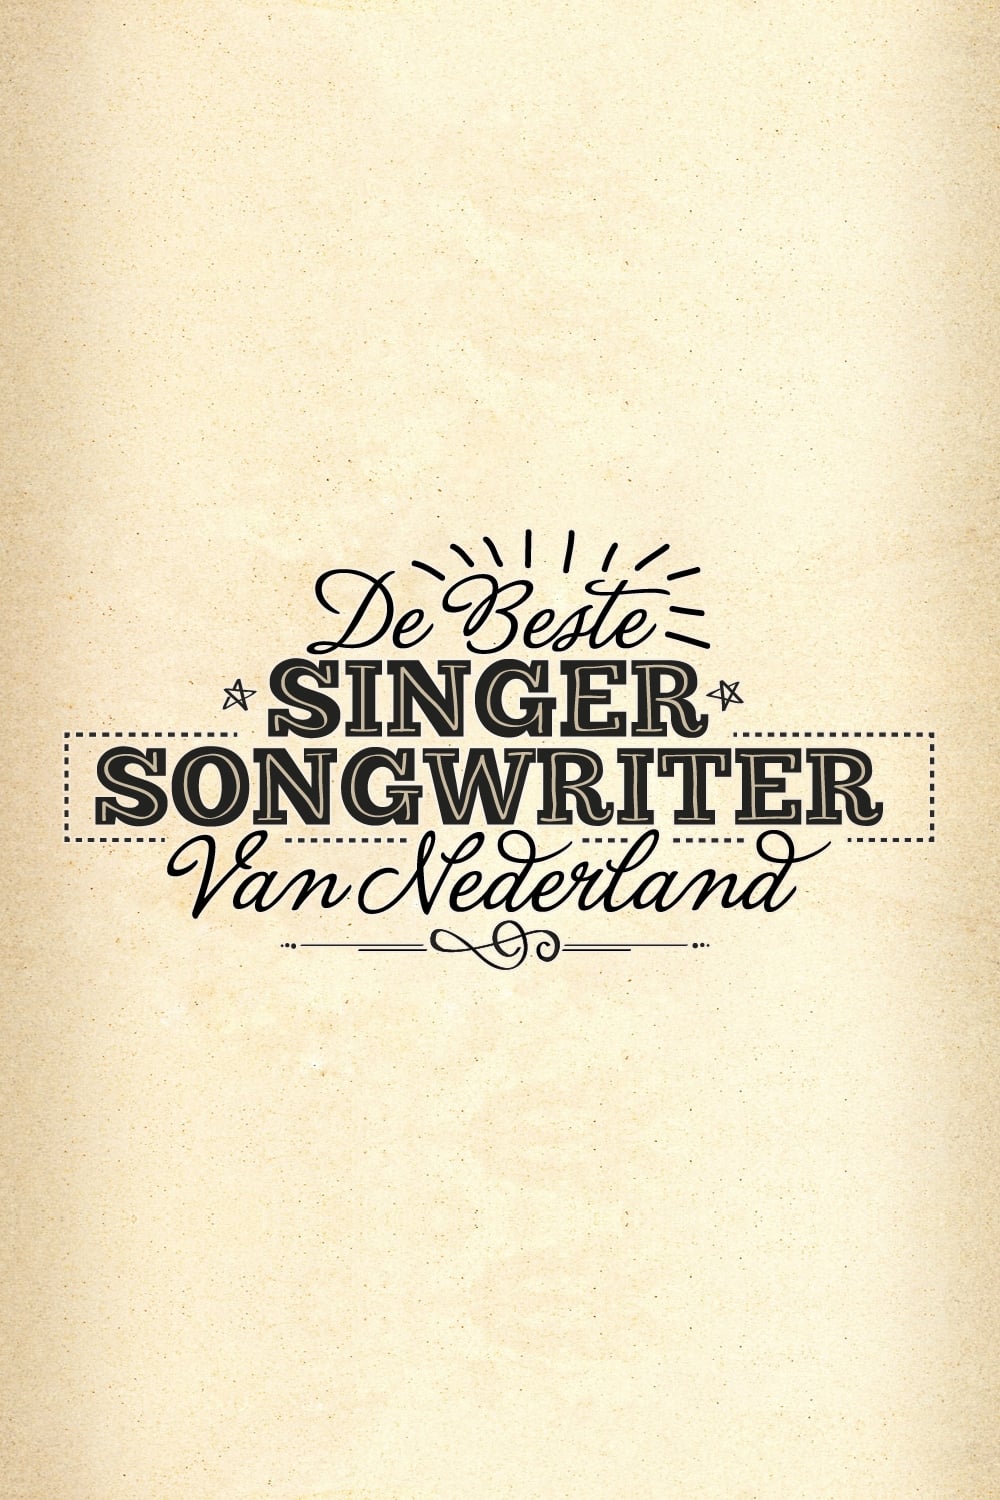 De Beste Singer-Songwriter van Nederland